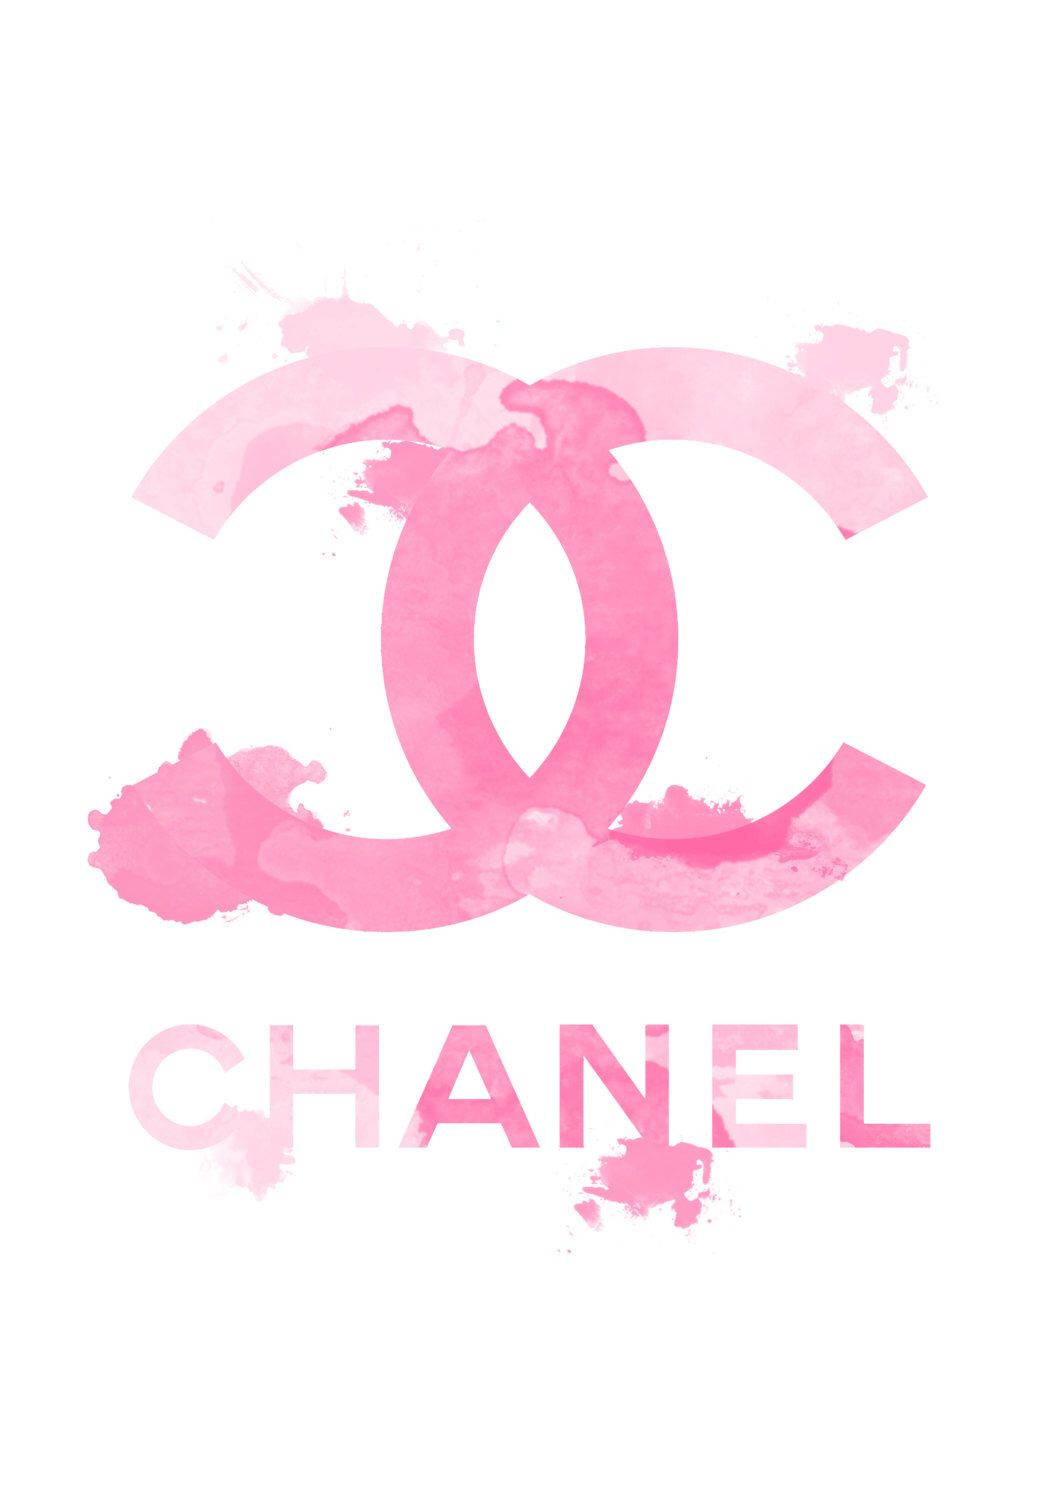 Et lyst pink Chanel-logo der symboliserer det luksuriøse modebrand. Wallpaper